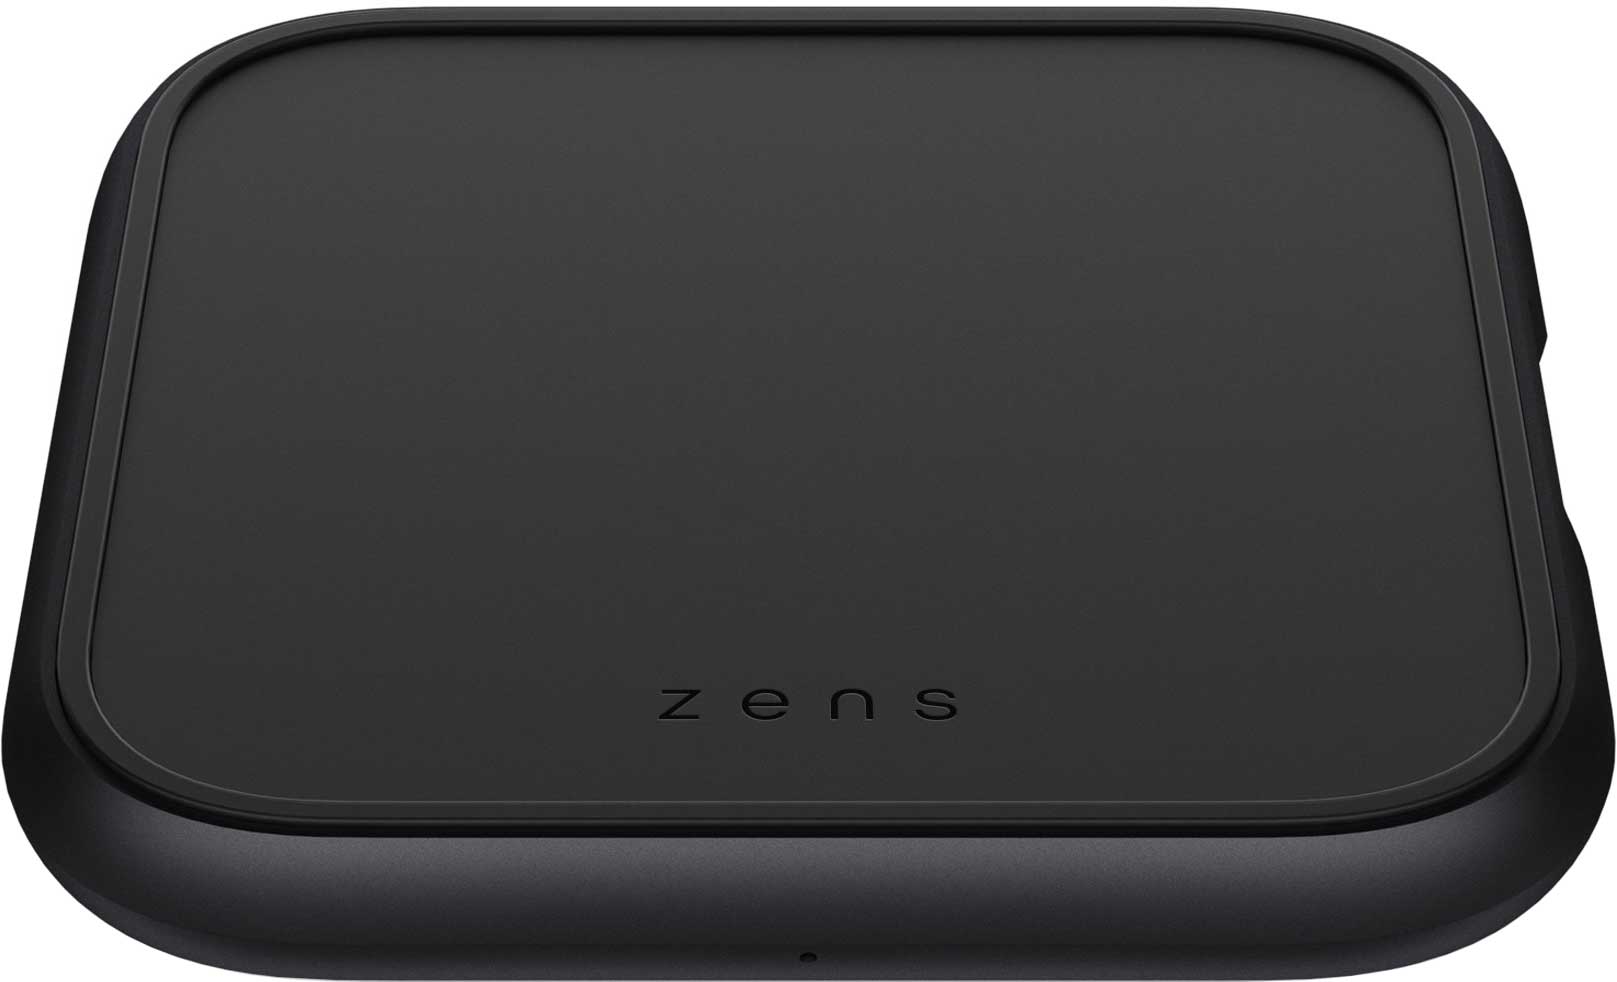 Беспроводное зарядное устройство ZENS Aluminium Single Fast Wireless Charger черный 50 шт порт зарядного устройства для samsung j4 плюс j415f 2018 j400 j6 j6plus j727 j7plus j8 j810 j805 7 pin micro usb разъем для зарядки